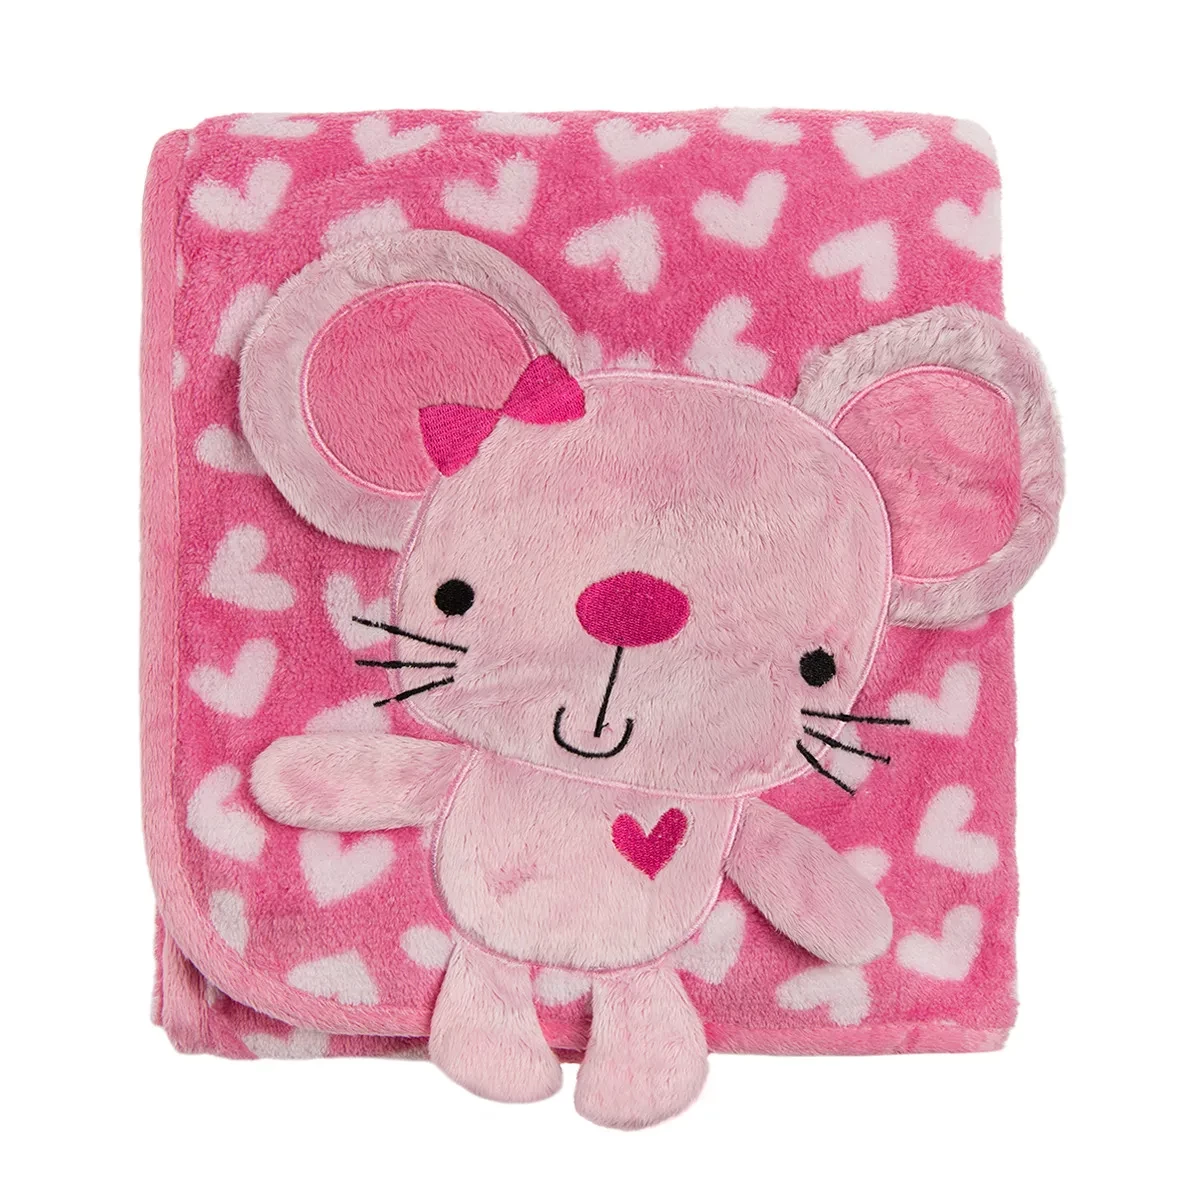 

Детское одеяло "Мышенок" от SMIKI, 76 x 102 см, розовое, Розовый